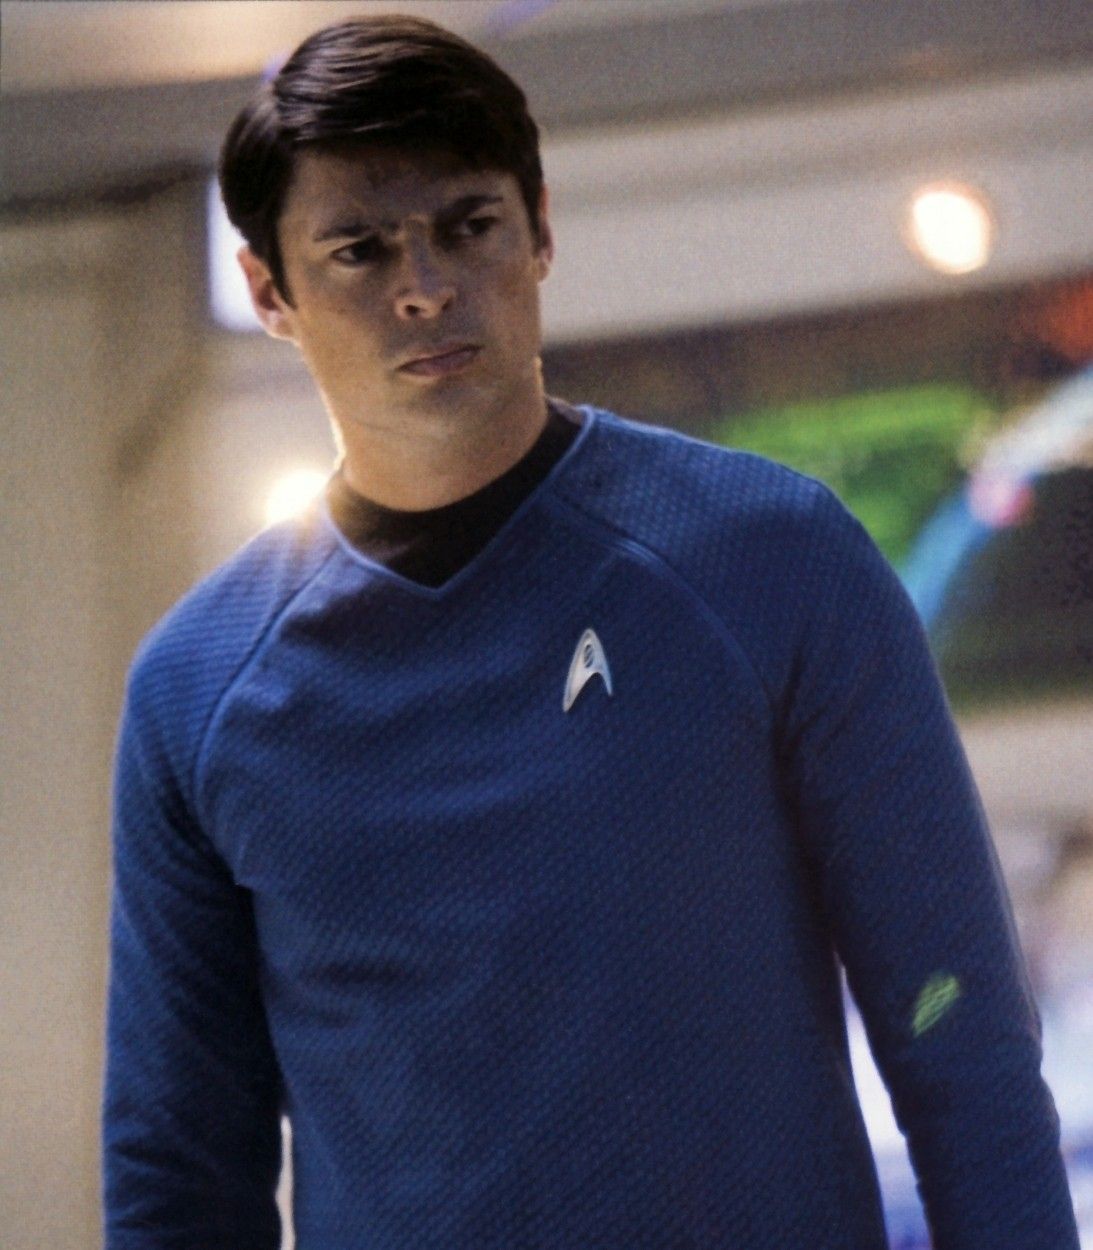 Karl Urban as McCoy in Star Trek vertical